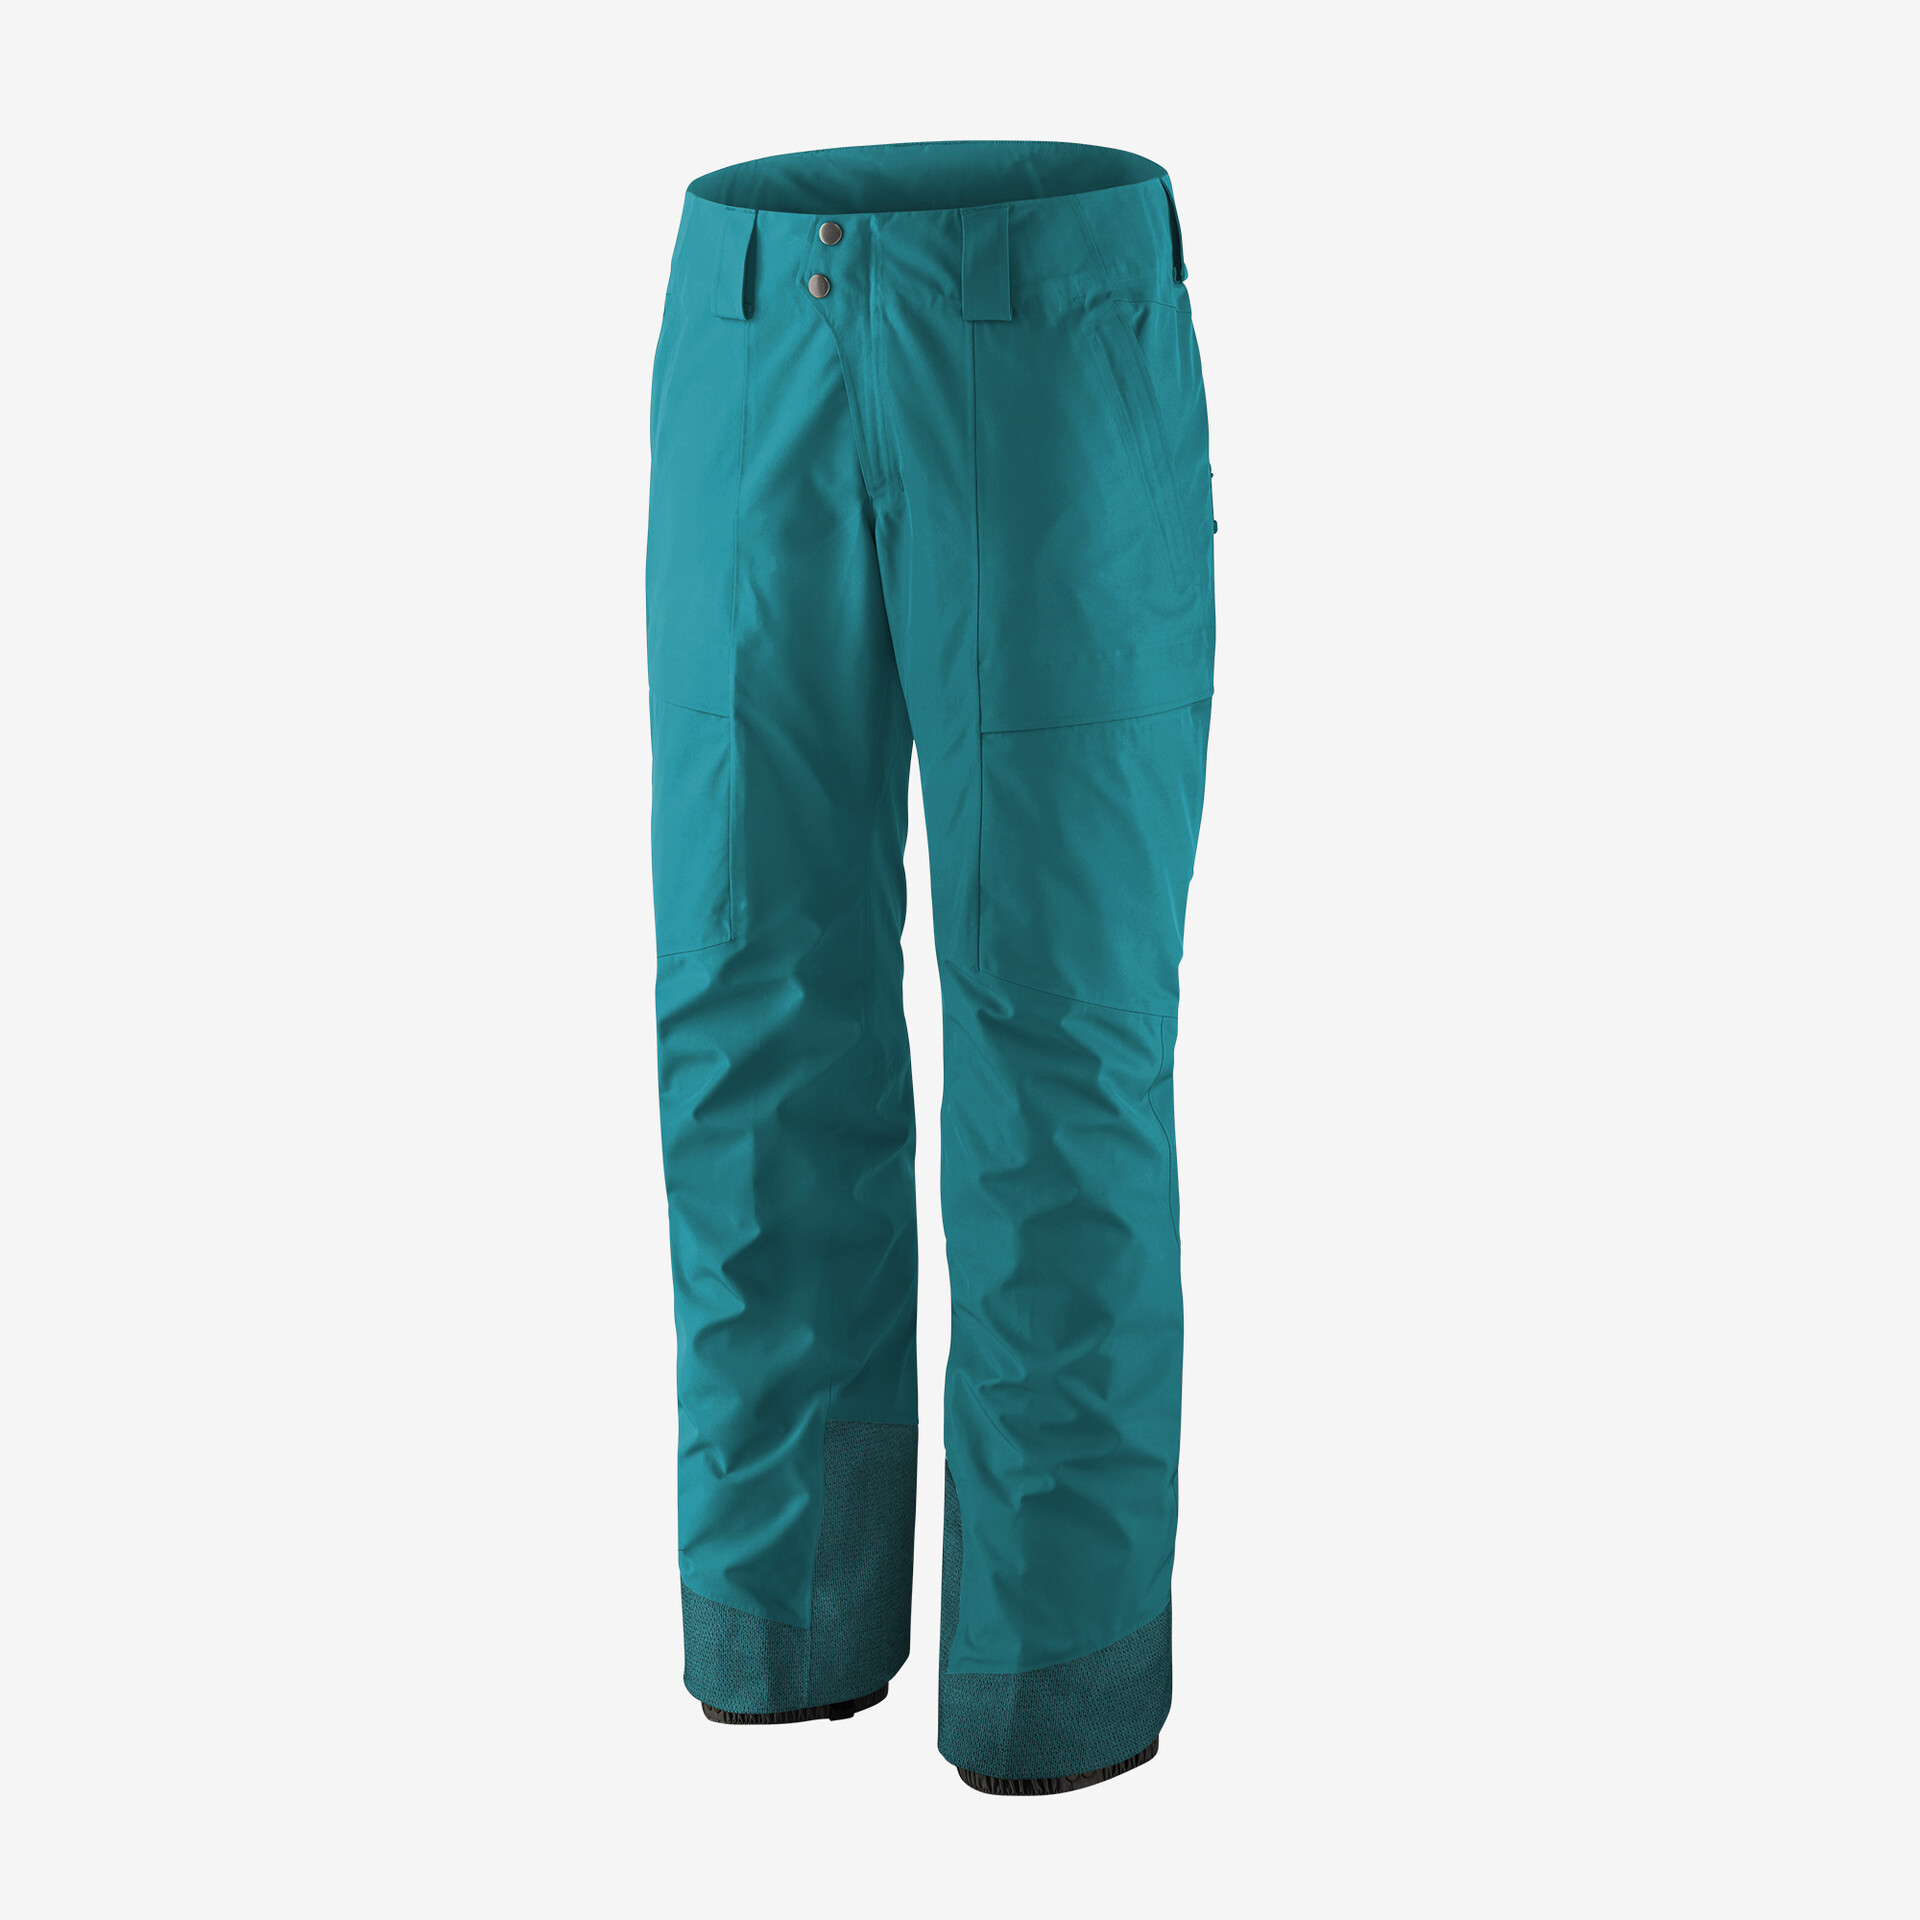 Женские брюки Storm Shift Patagonia, синий брюки patagonia storm shift цвет nouveau green